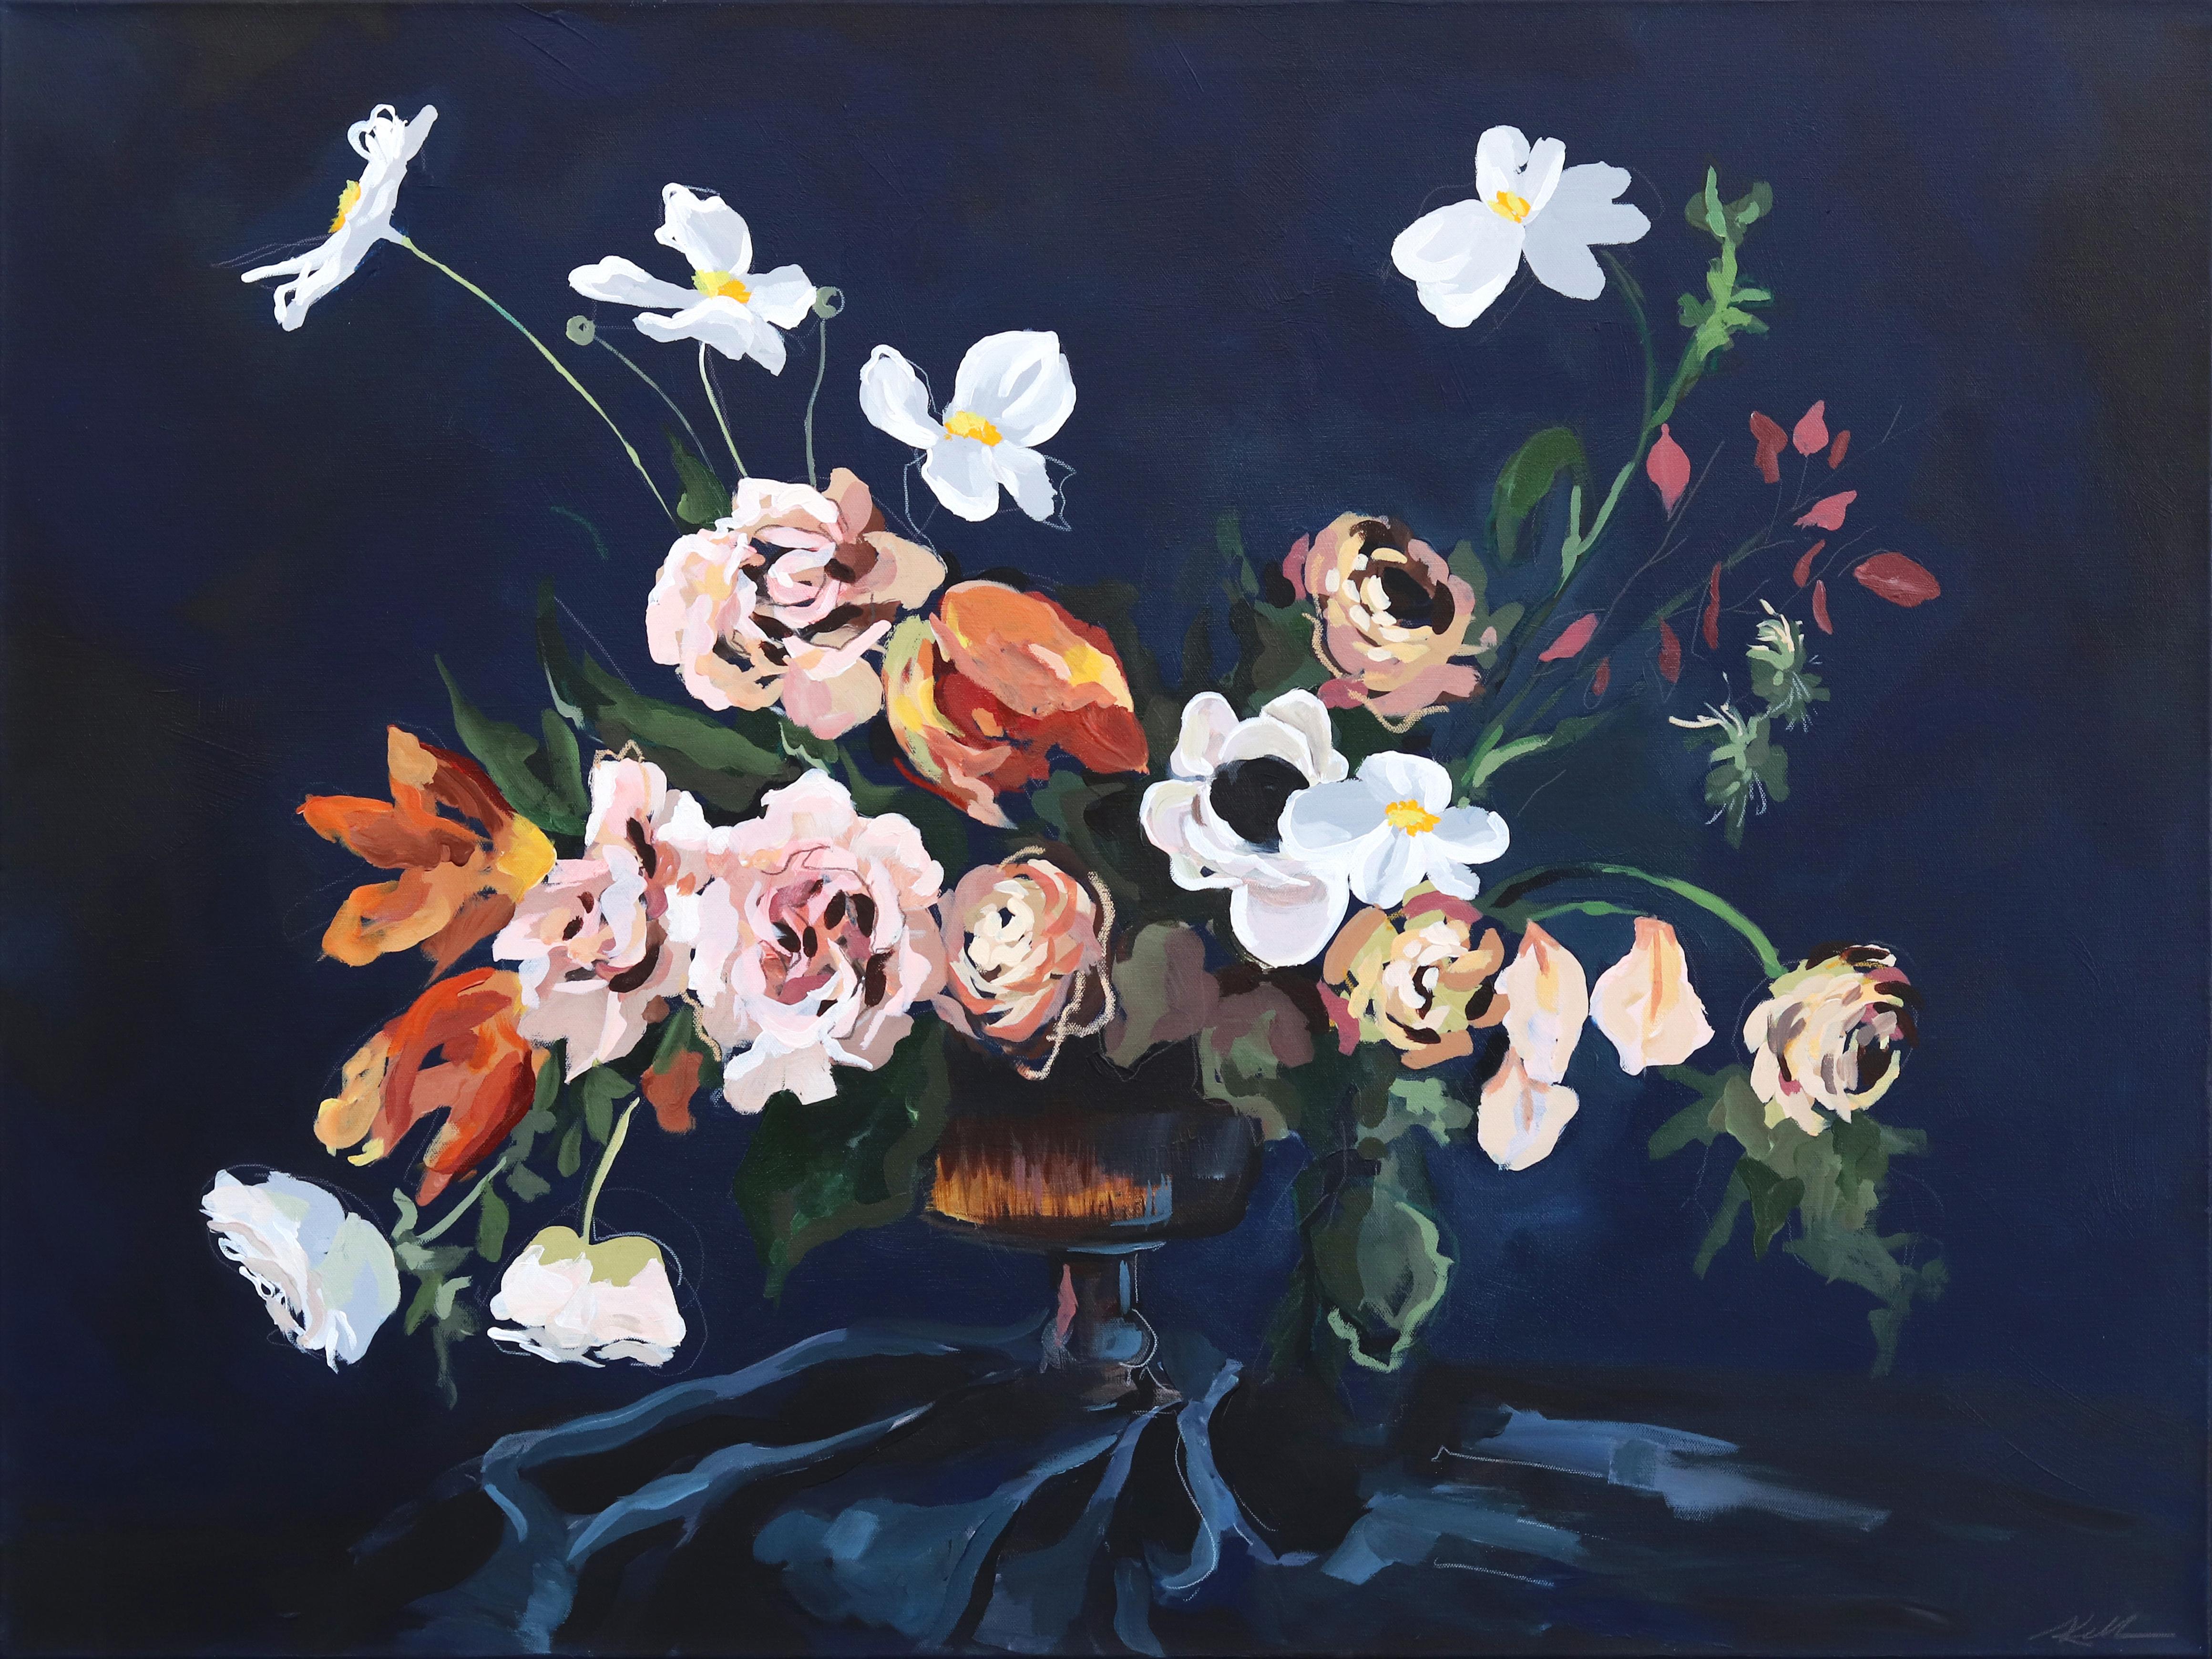 Grande nature morte florale - Peinture impressionniste contemporaine - Fleurs de la moisson